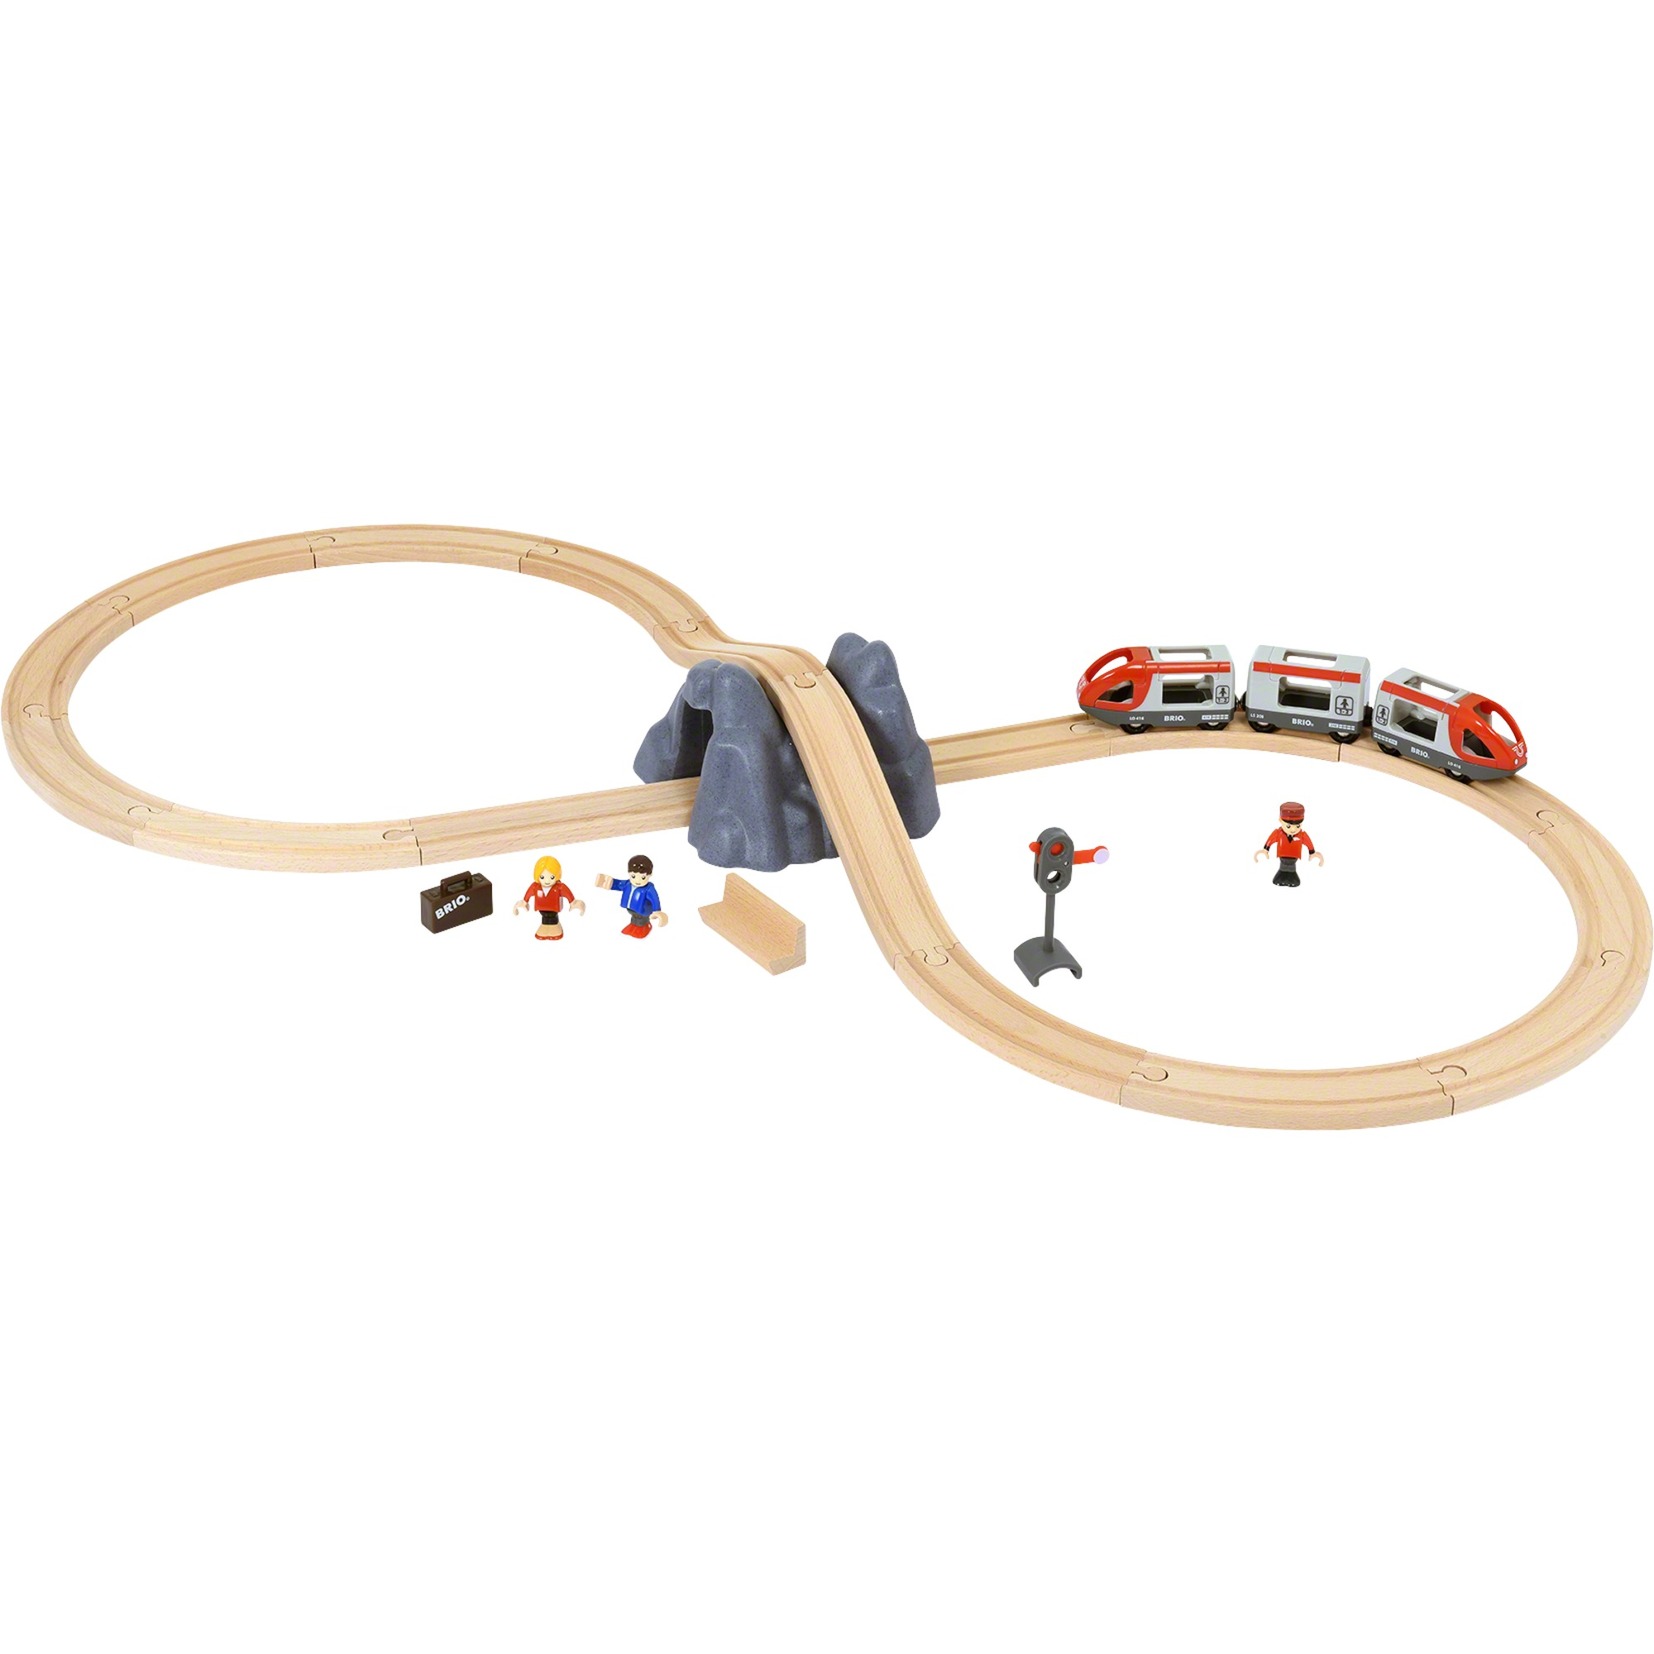 Image of Alternate - World Eisenbahn Starter Set A online einkaufen bei Alternate